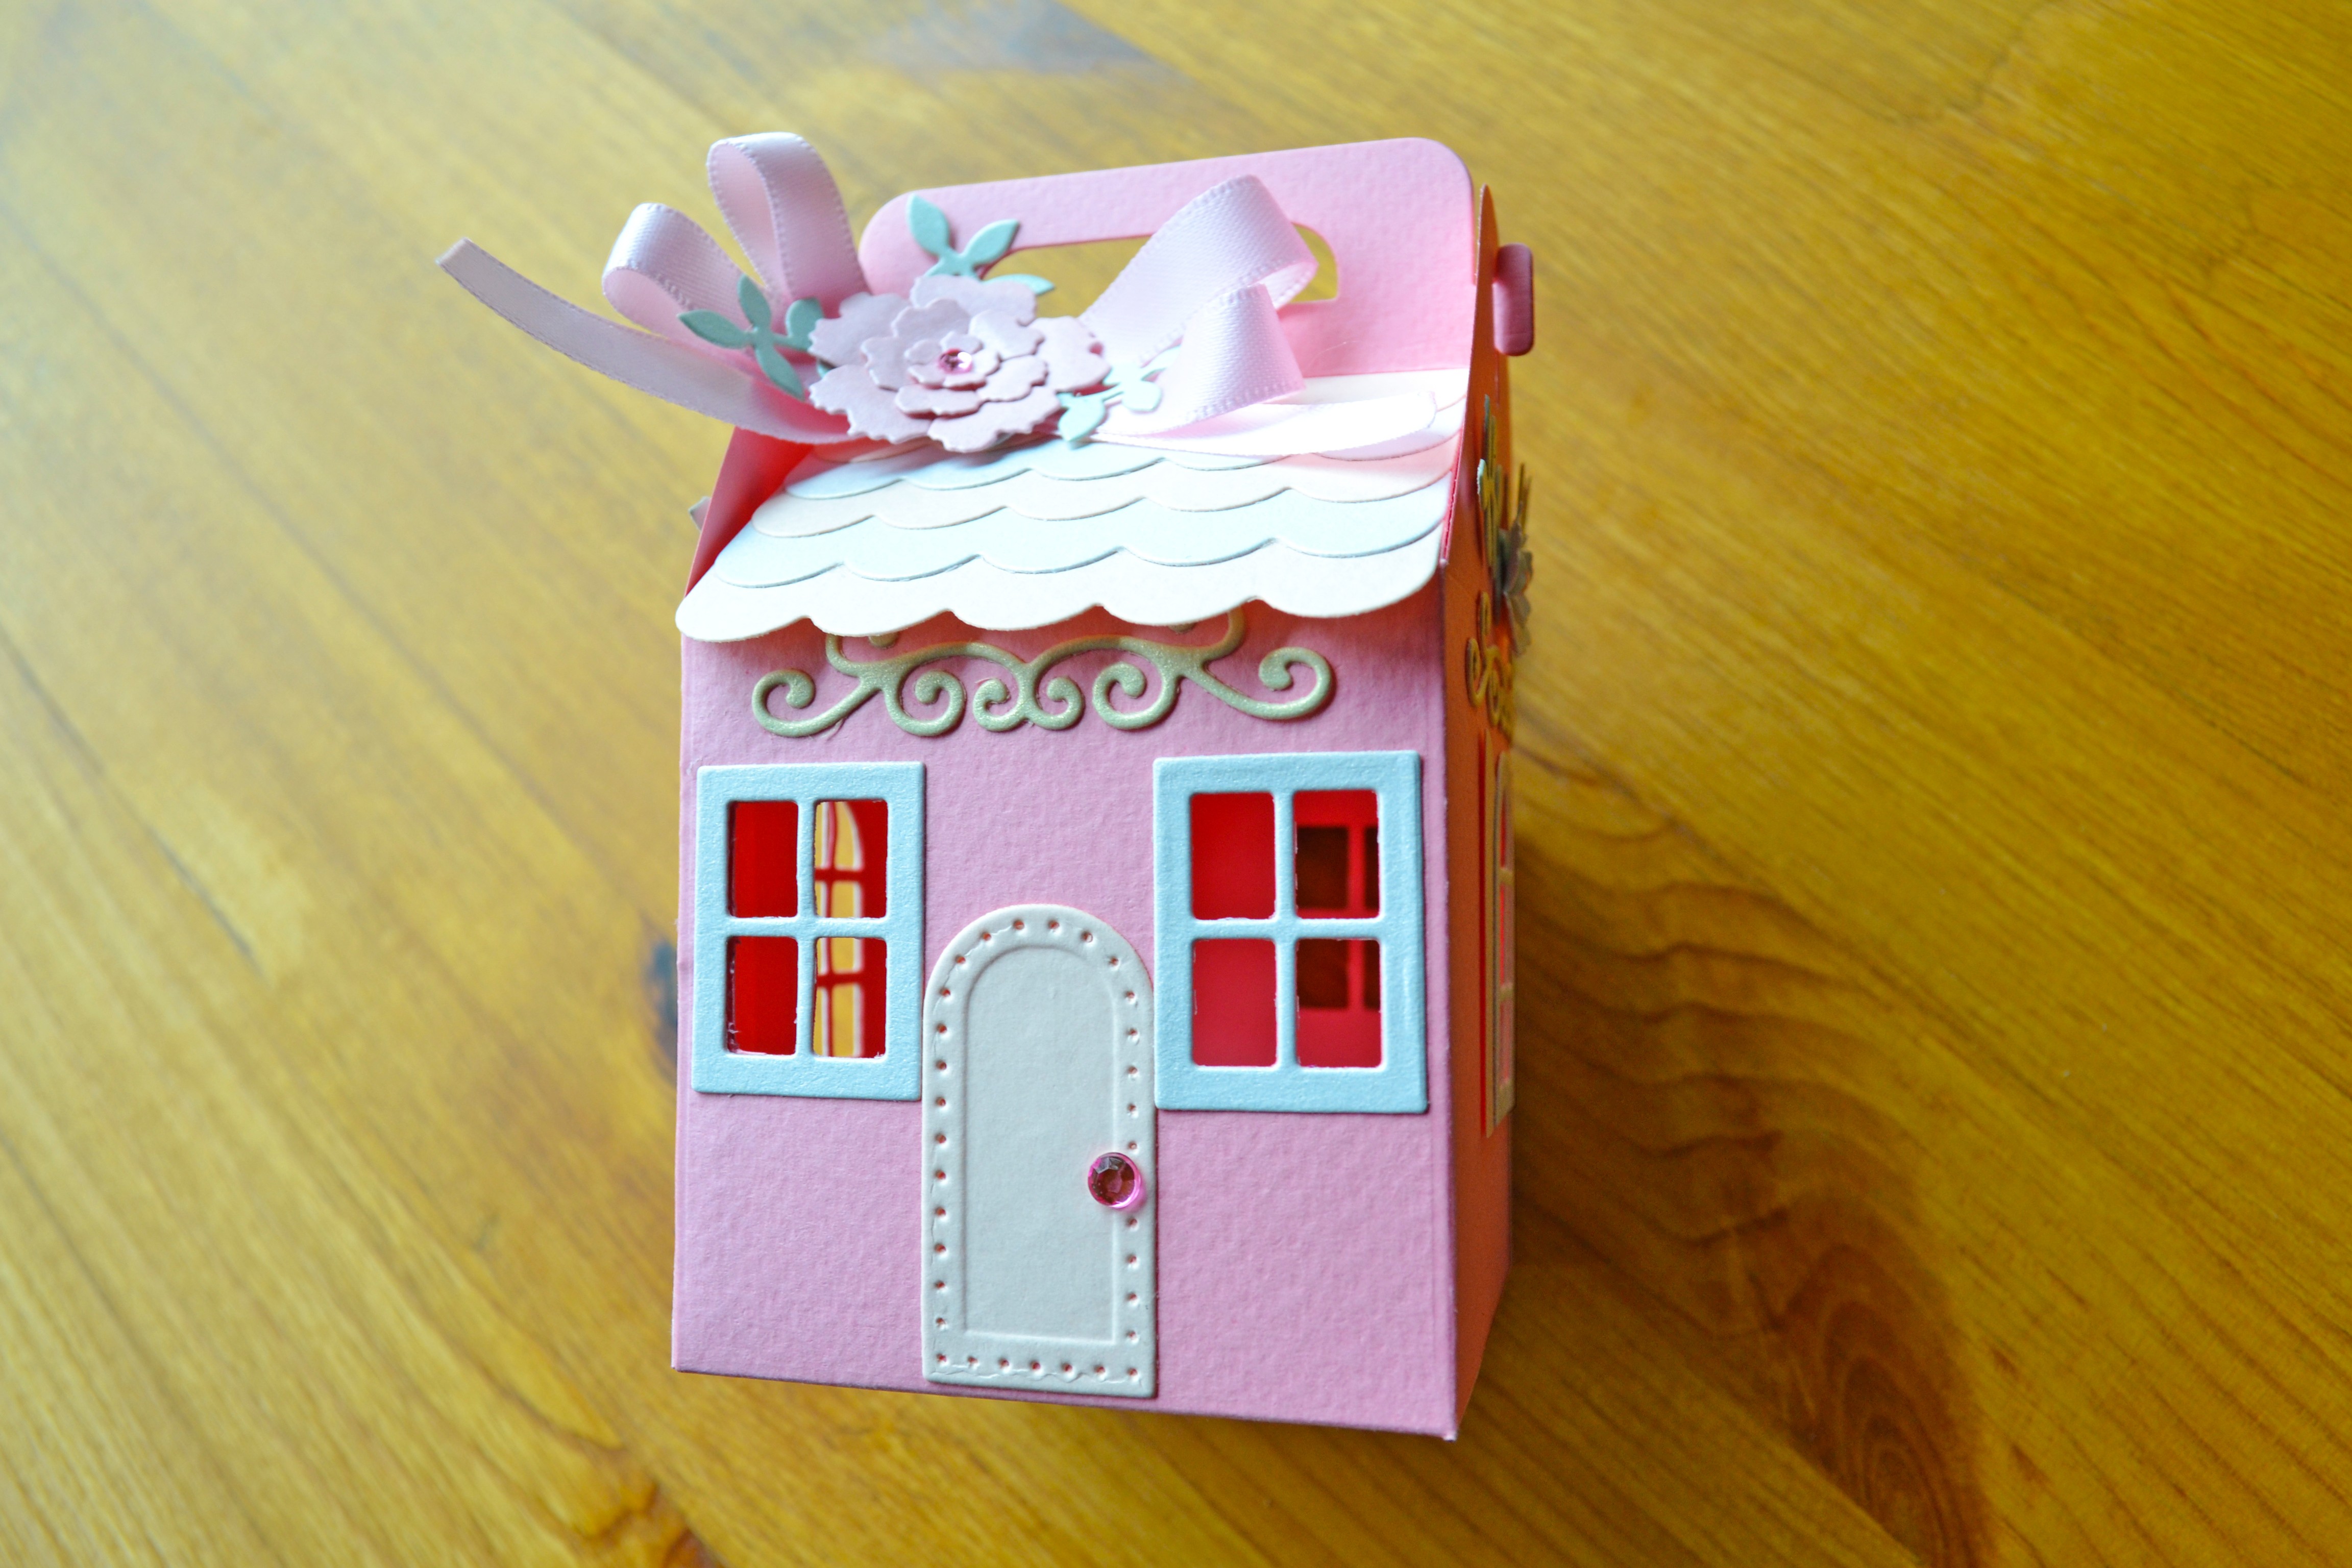 紙藝課程-浪漫滿屋禮物盒